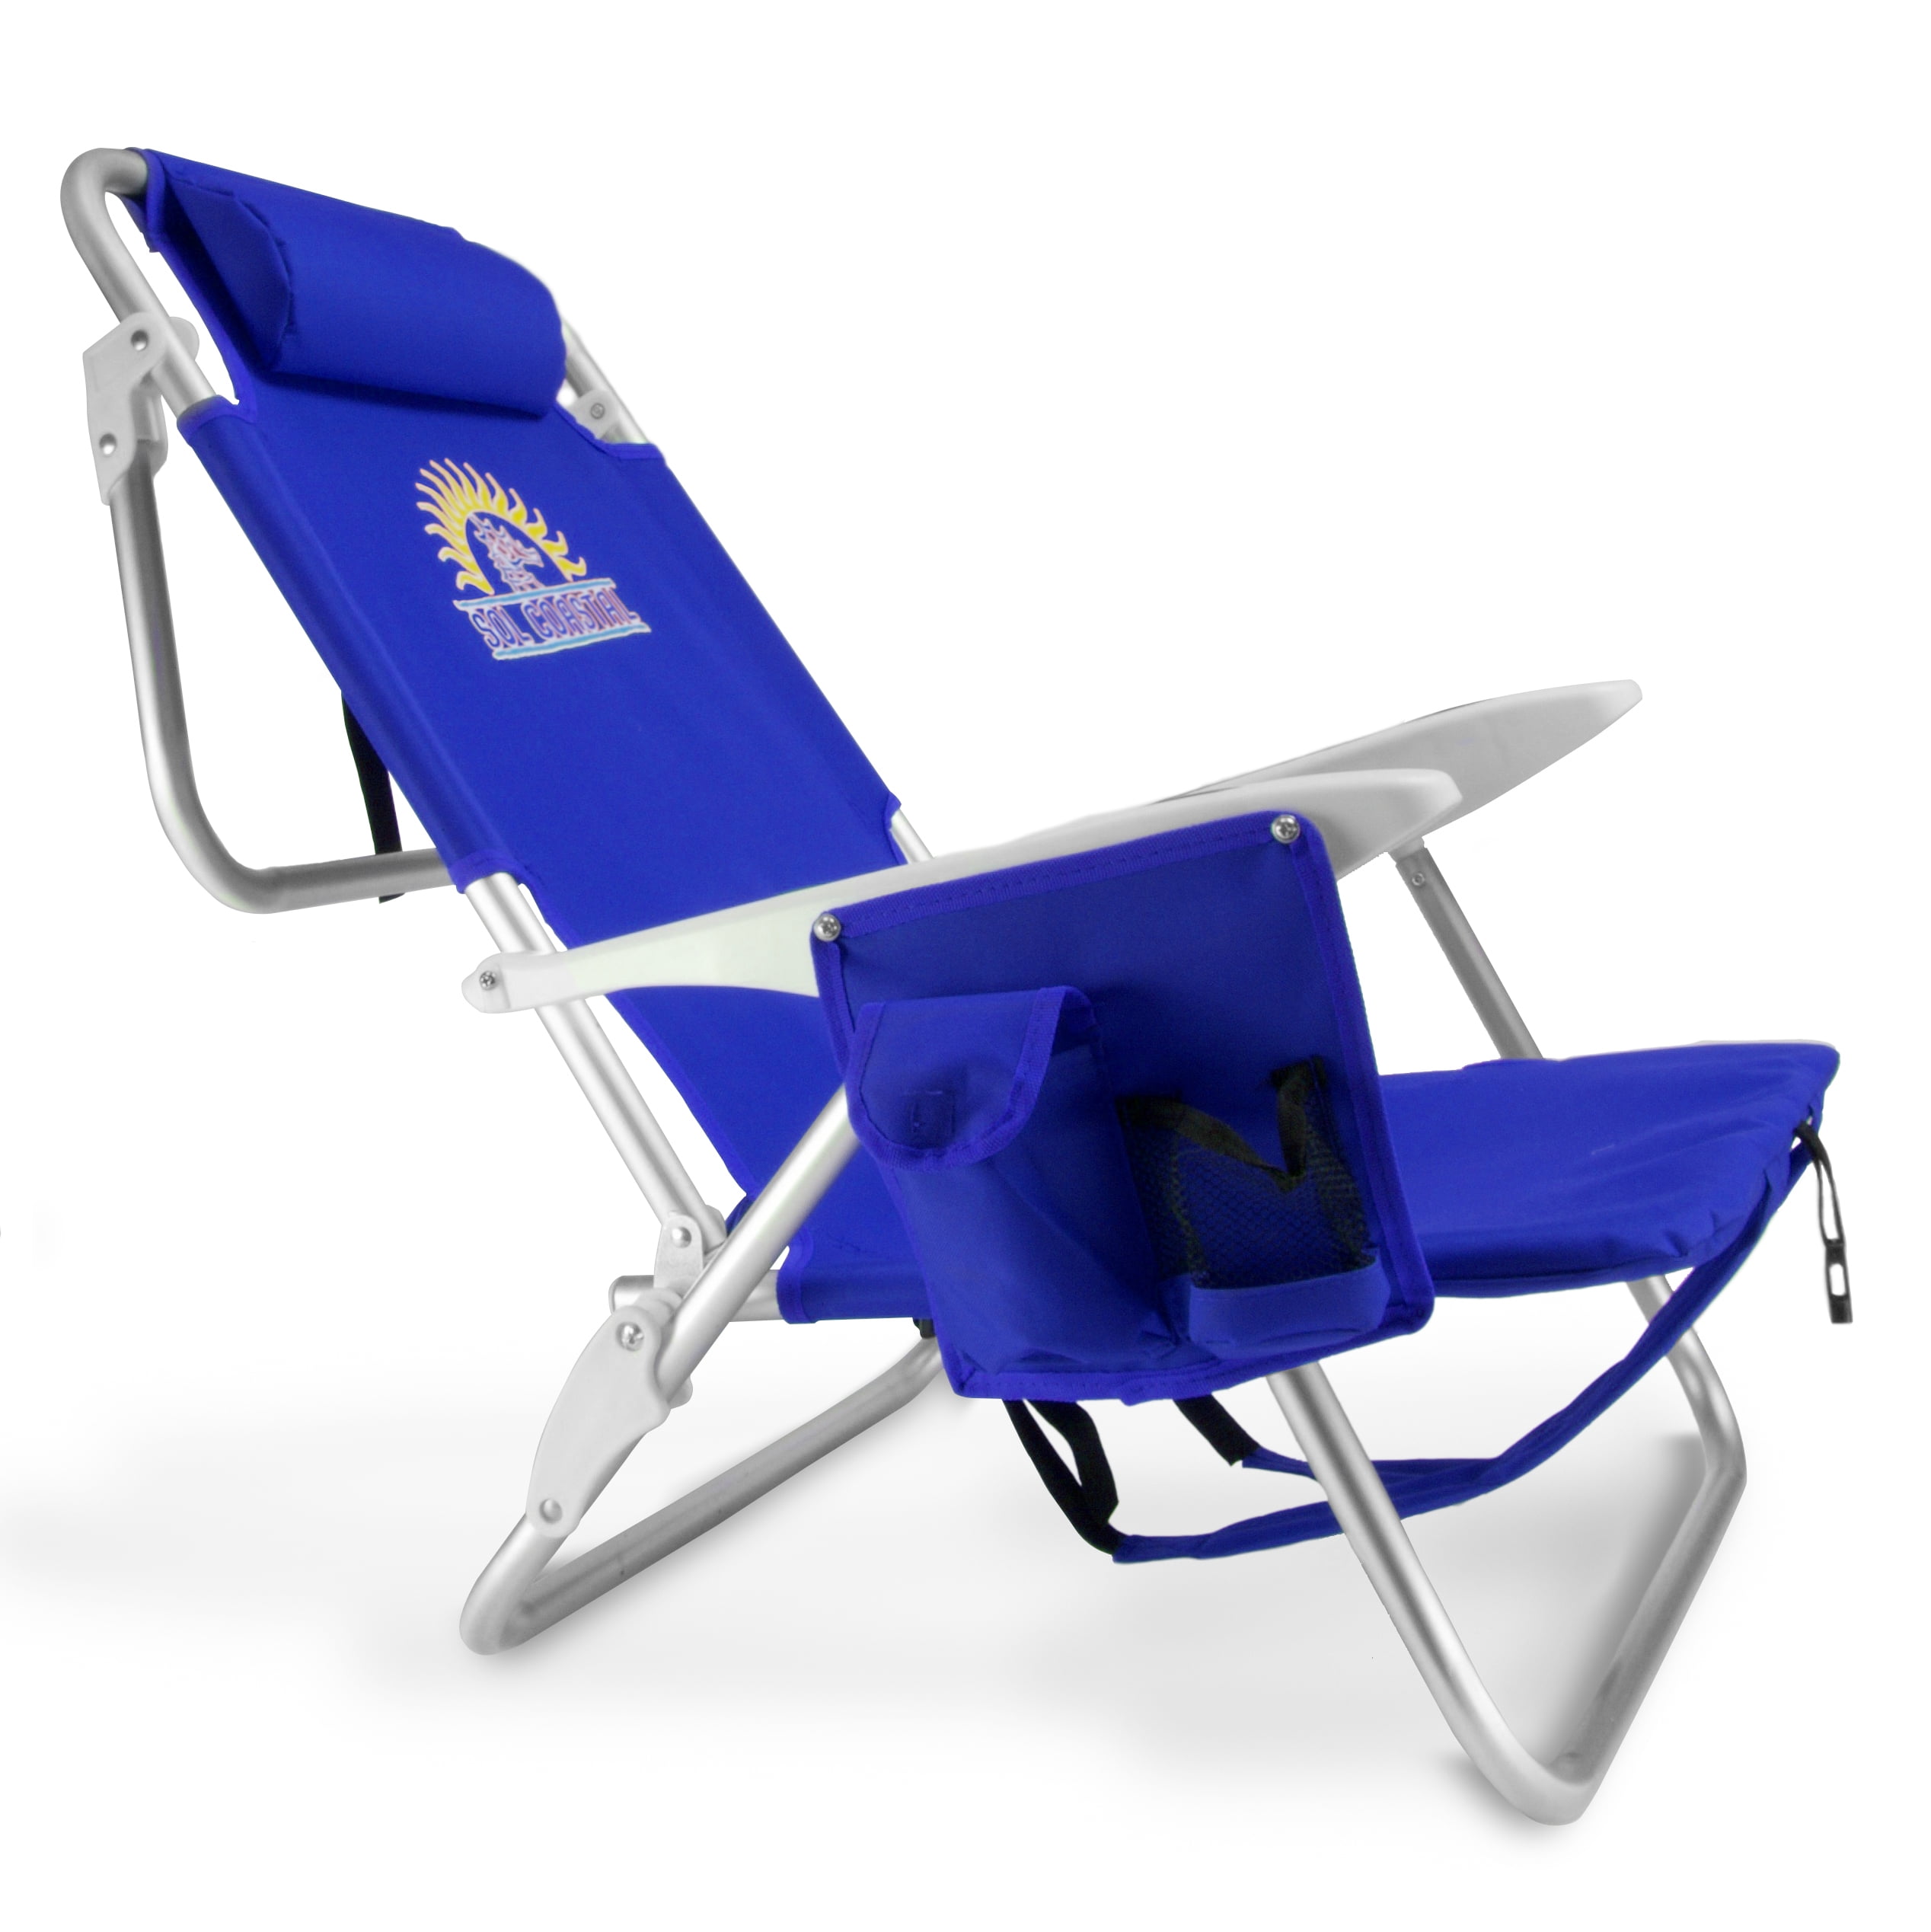 4-Position Folding Beach Chair, Blue - Walmart.com - Walmart.com